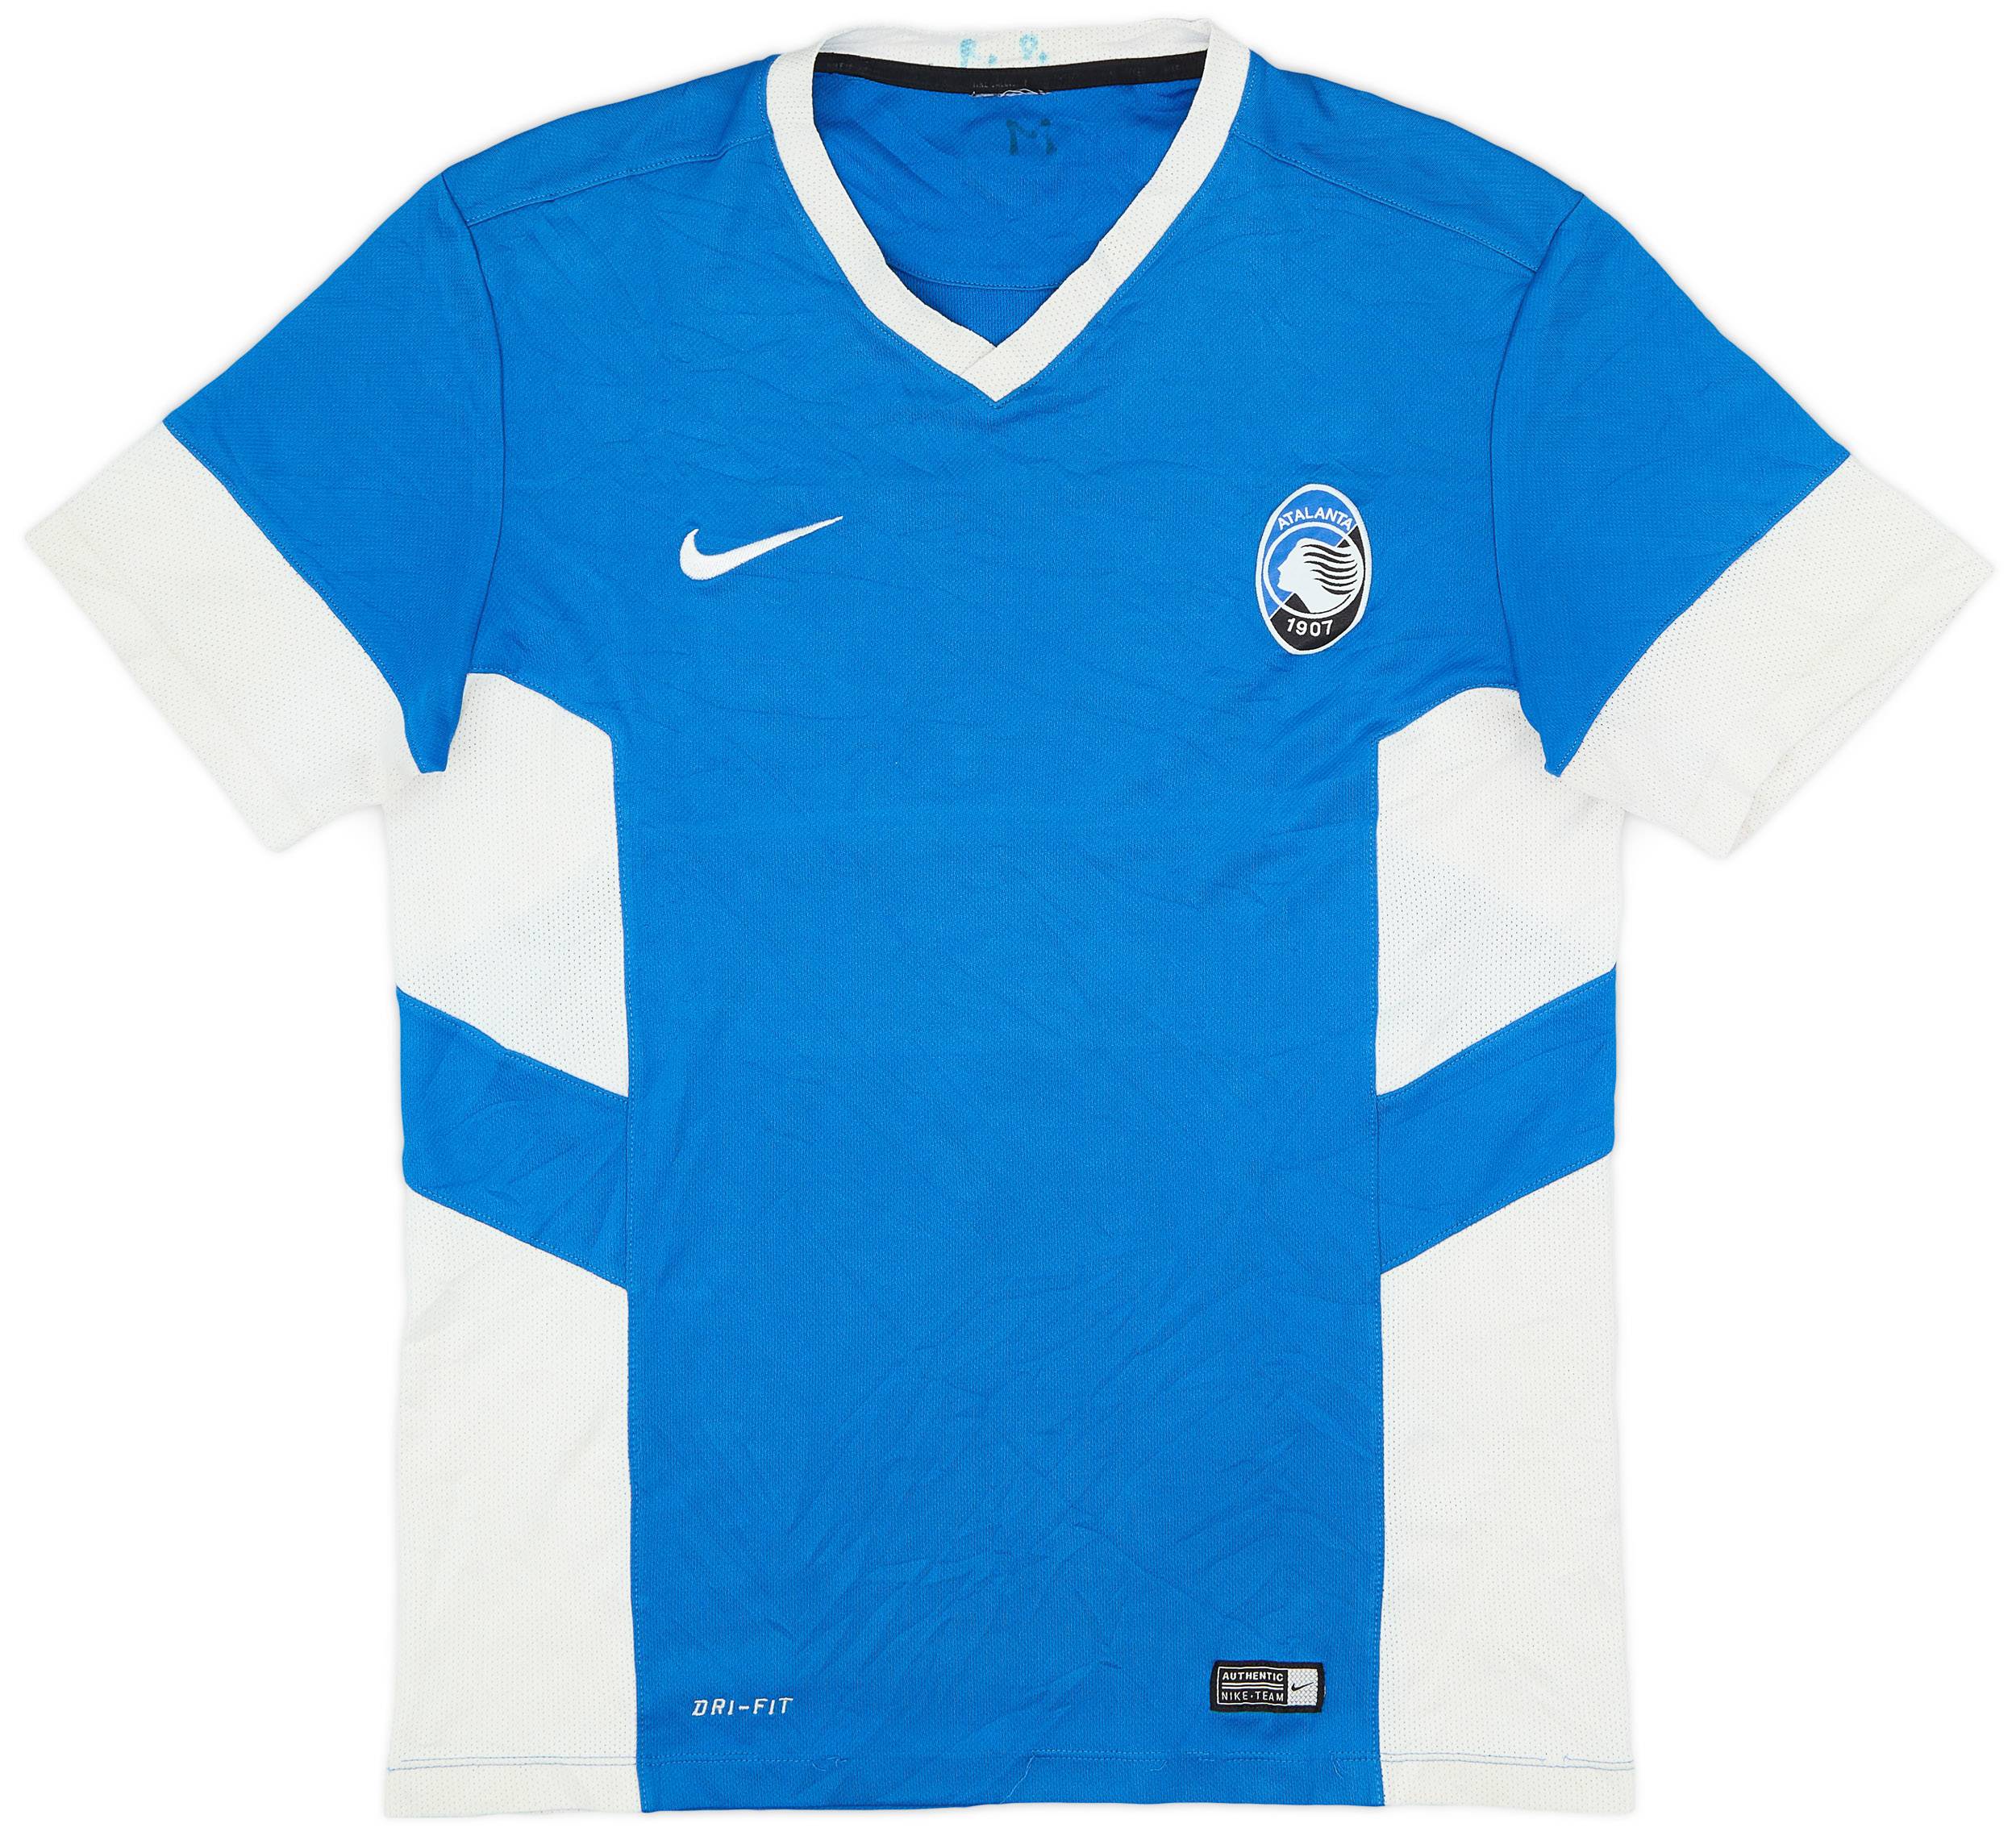 2014-15 Atalanta Nike Training Shirt - 6/10 - (M)